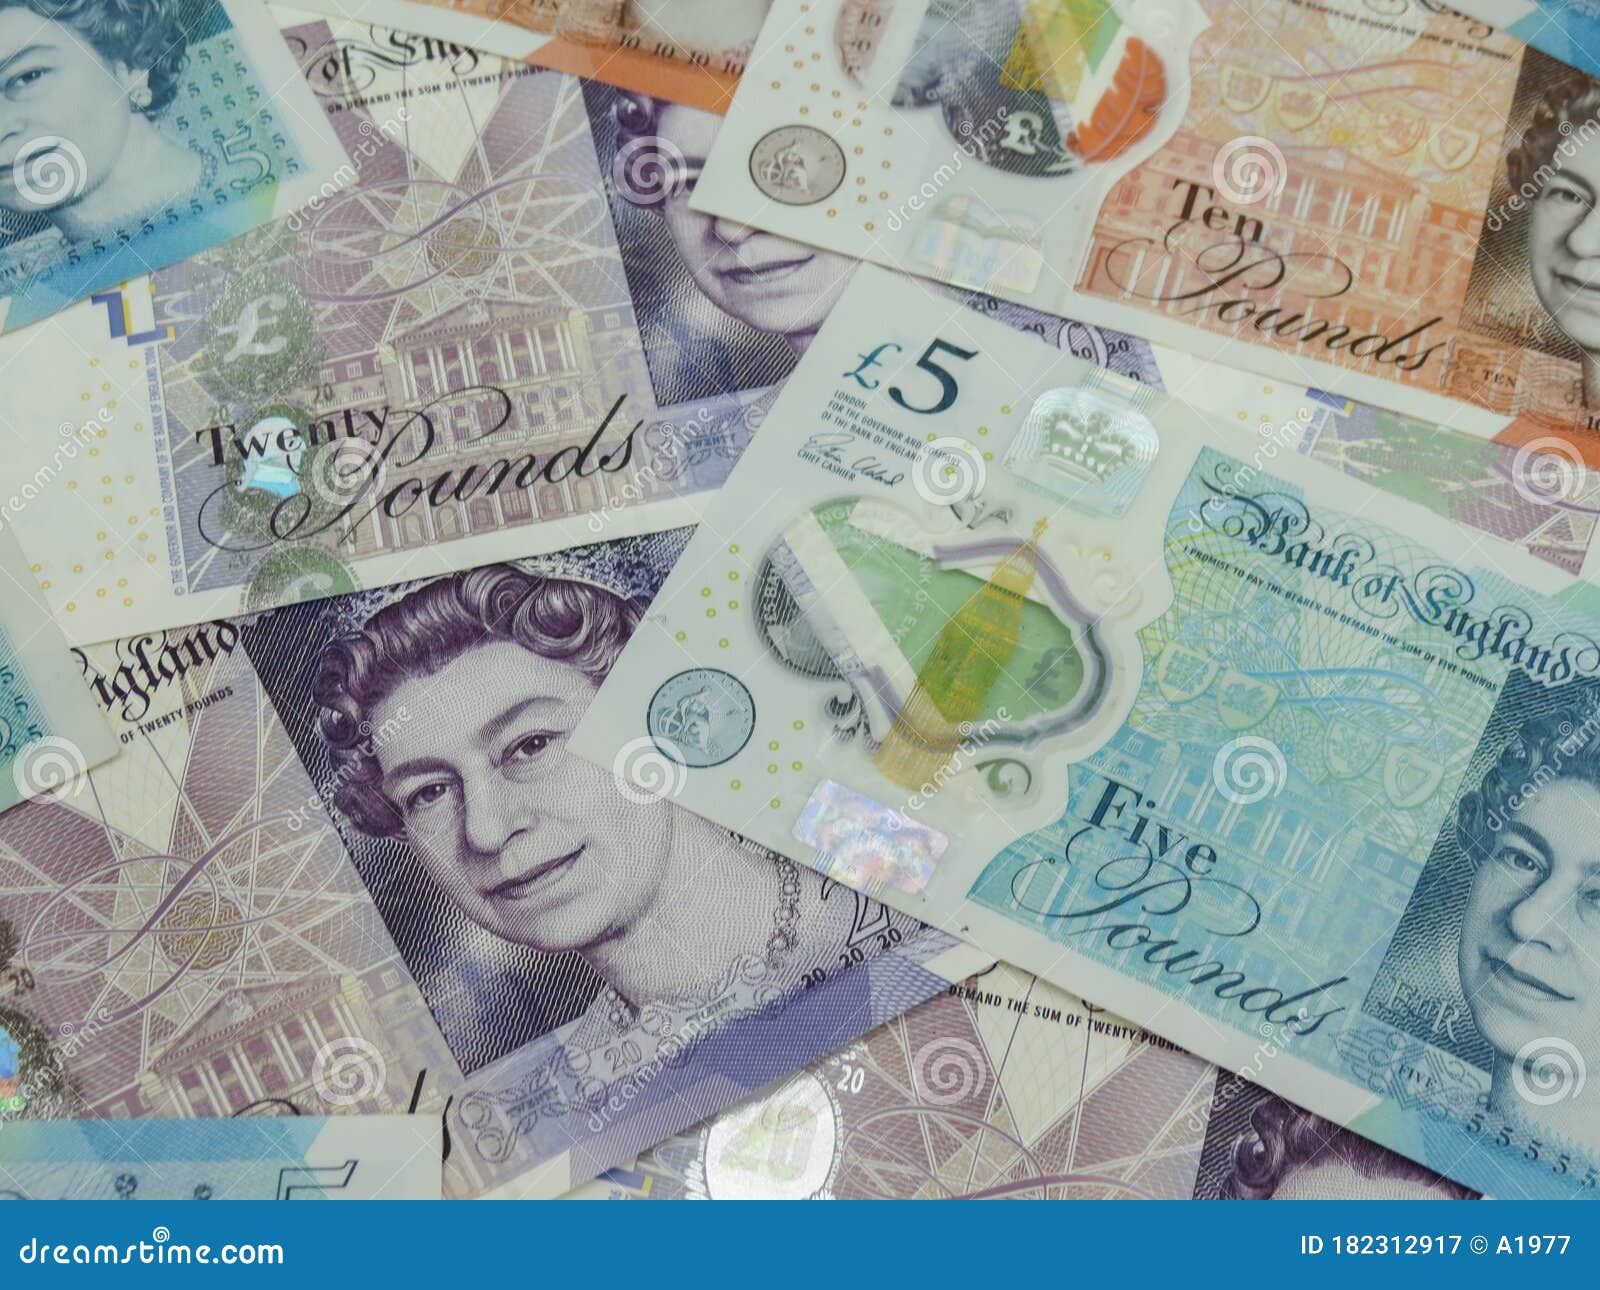 英国央行公布新版英镑纸币设计图案_在线_查尔斯_国王